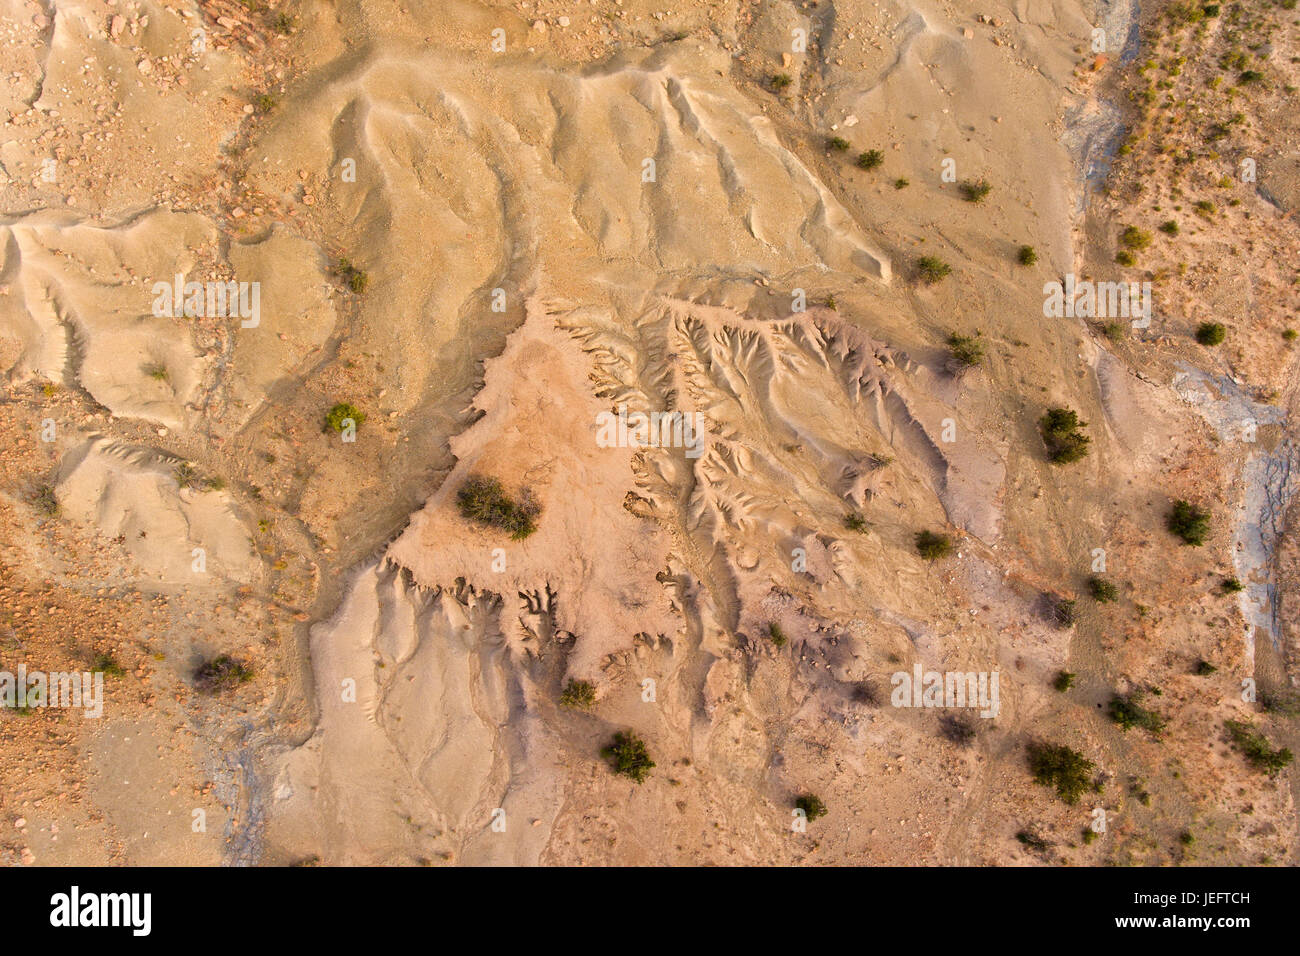 Vista aérea de una grave erosión del suelo en una región árida de Sudáfrica Foto de stock